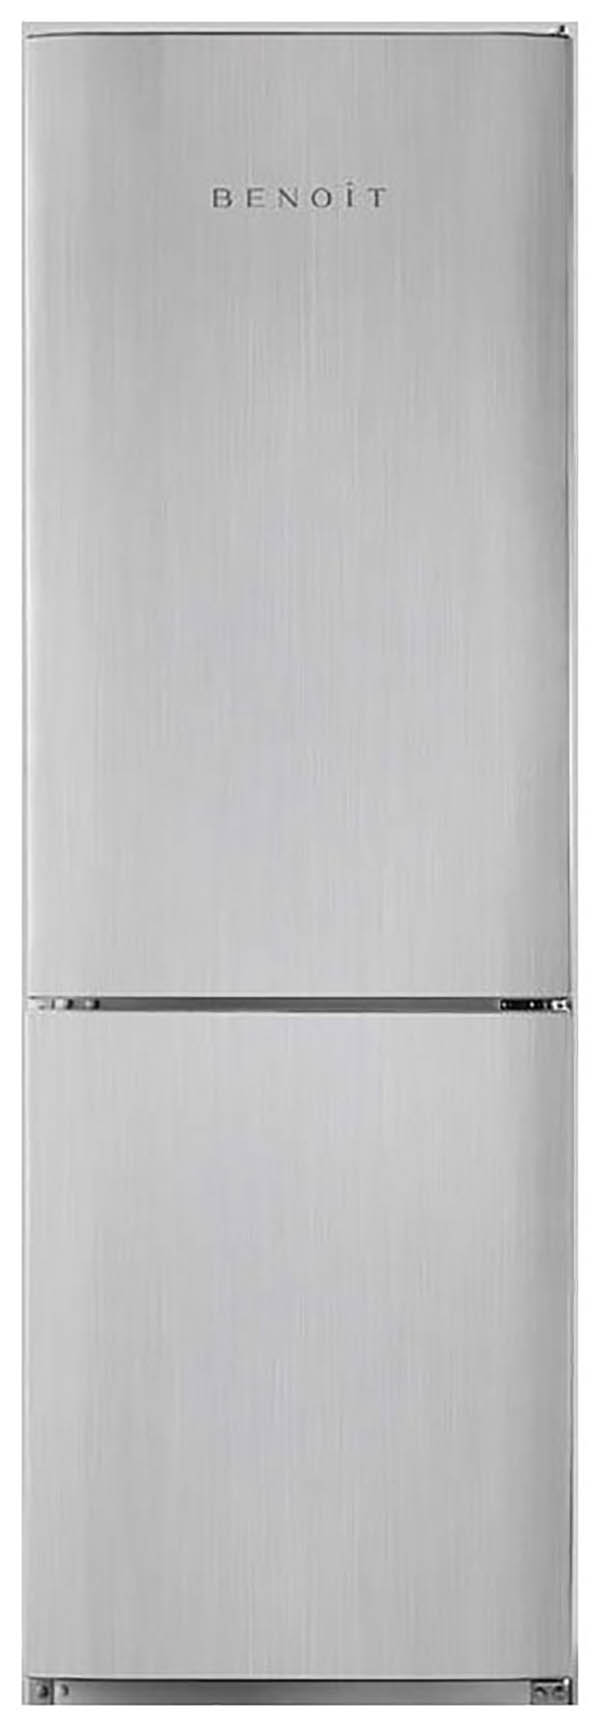 Холодильник Benoit 314 серебристый холодильник benoit 314 серебристый